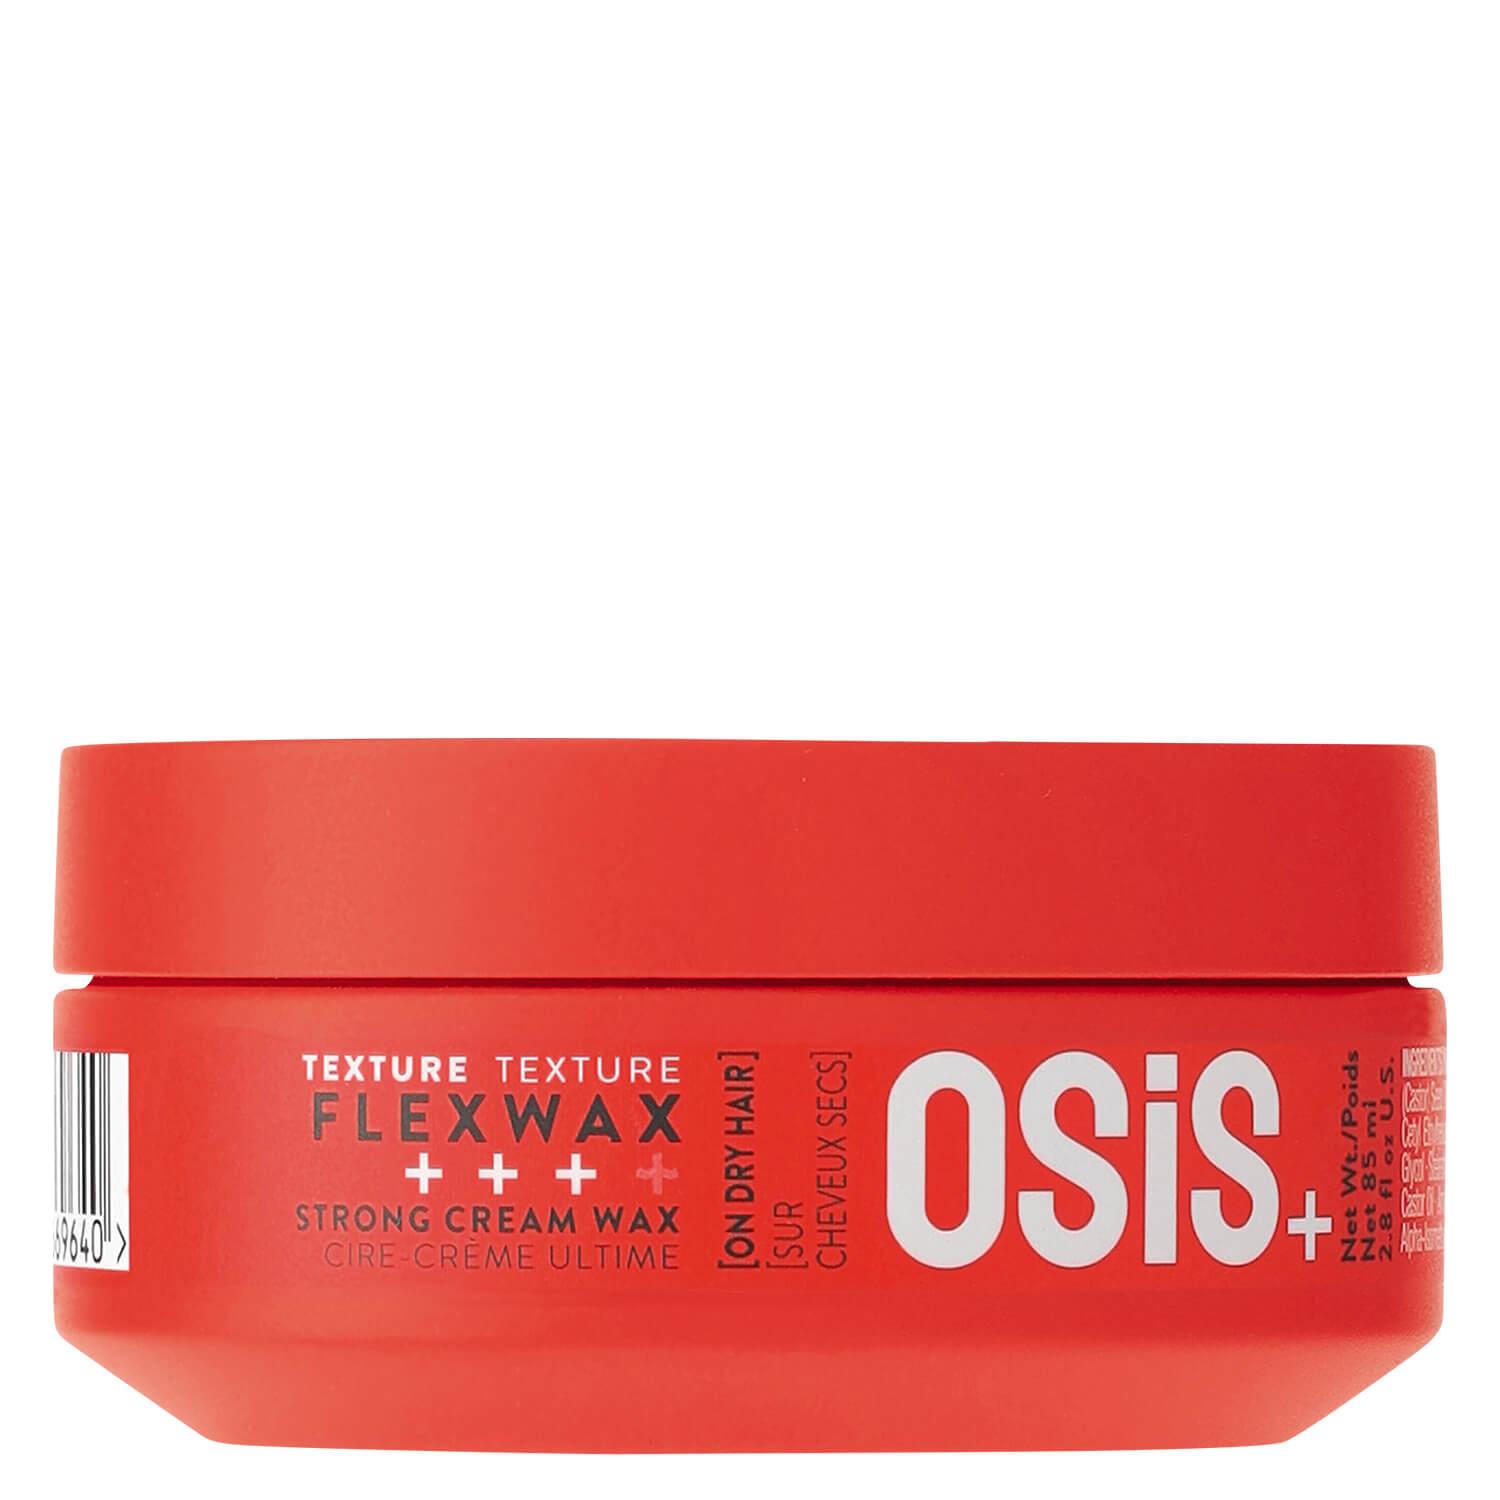 Osis - Flexwax Strong Cream Wax